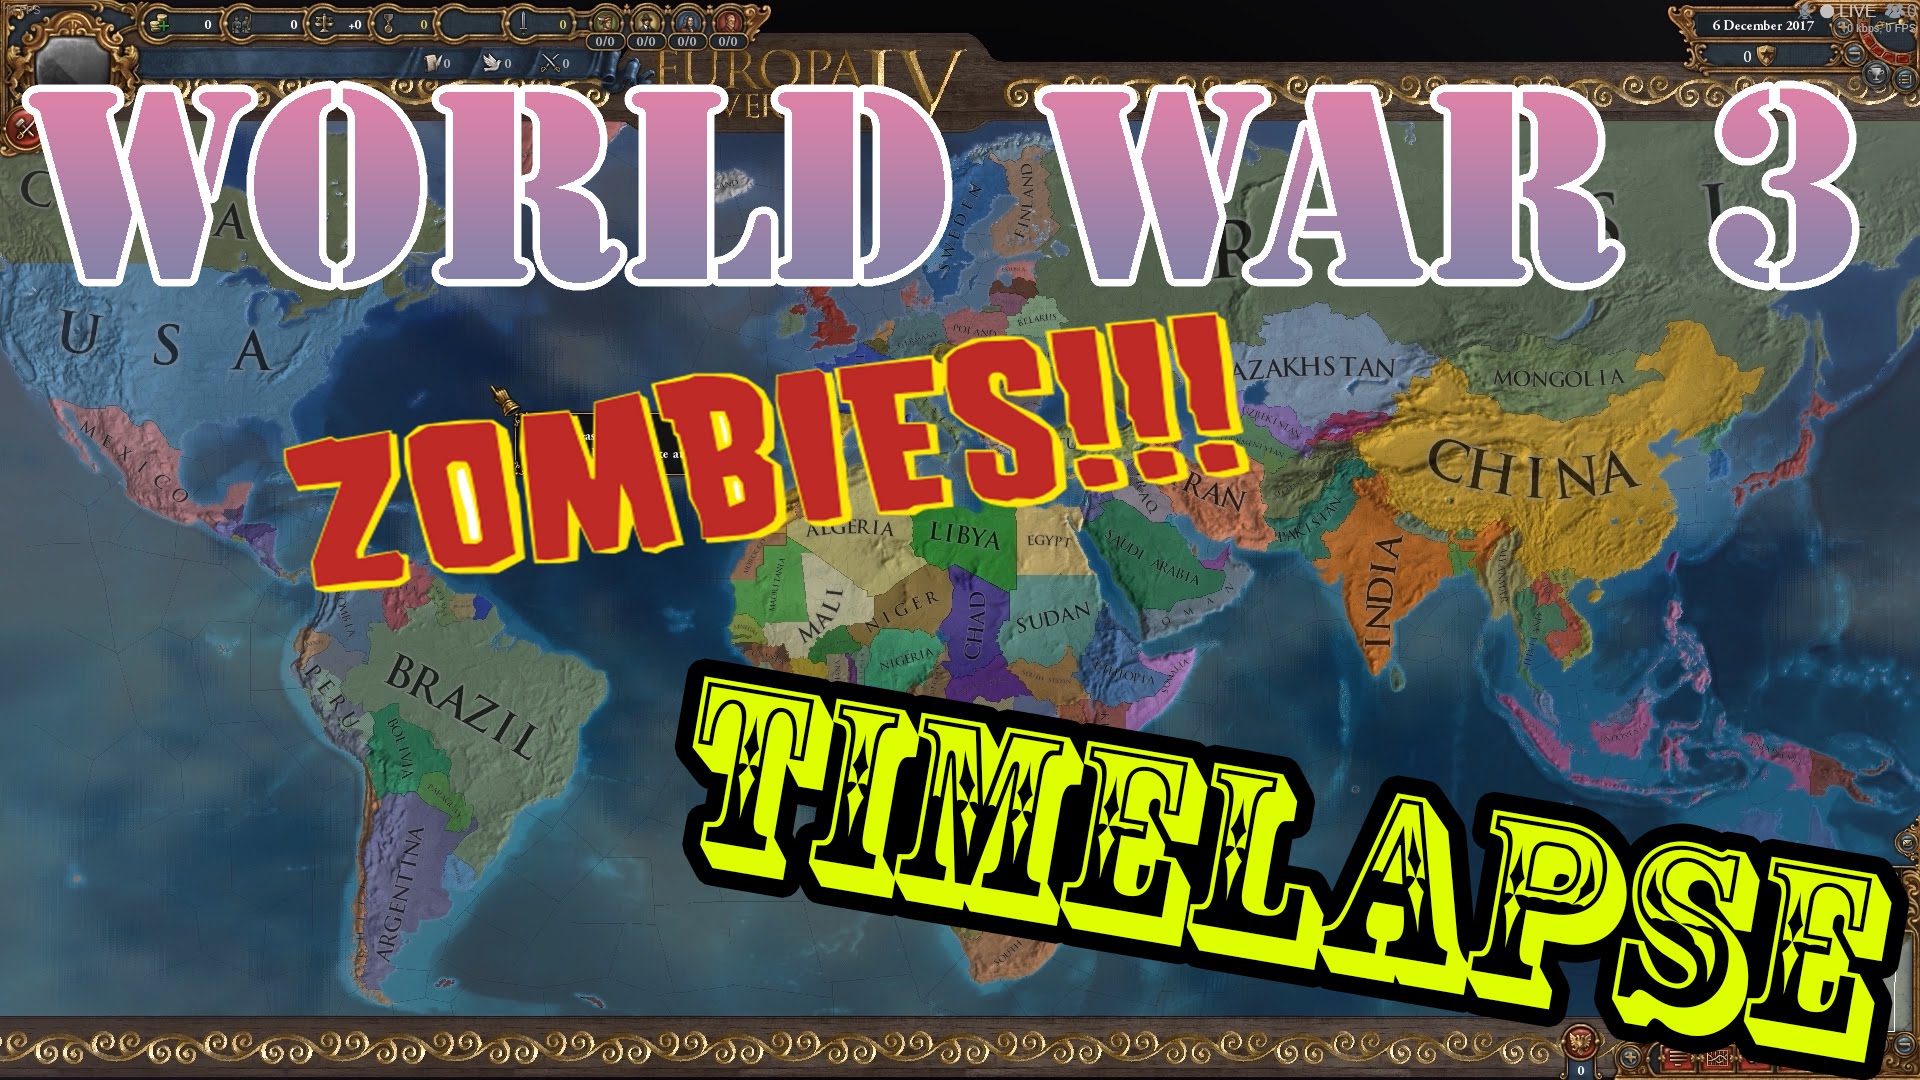 EU4 Timelapse World War 3 & zombies South Africa